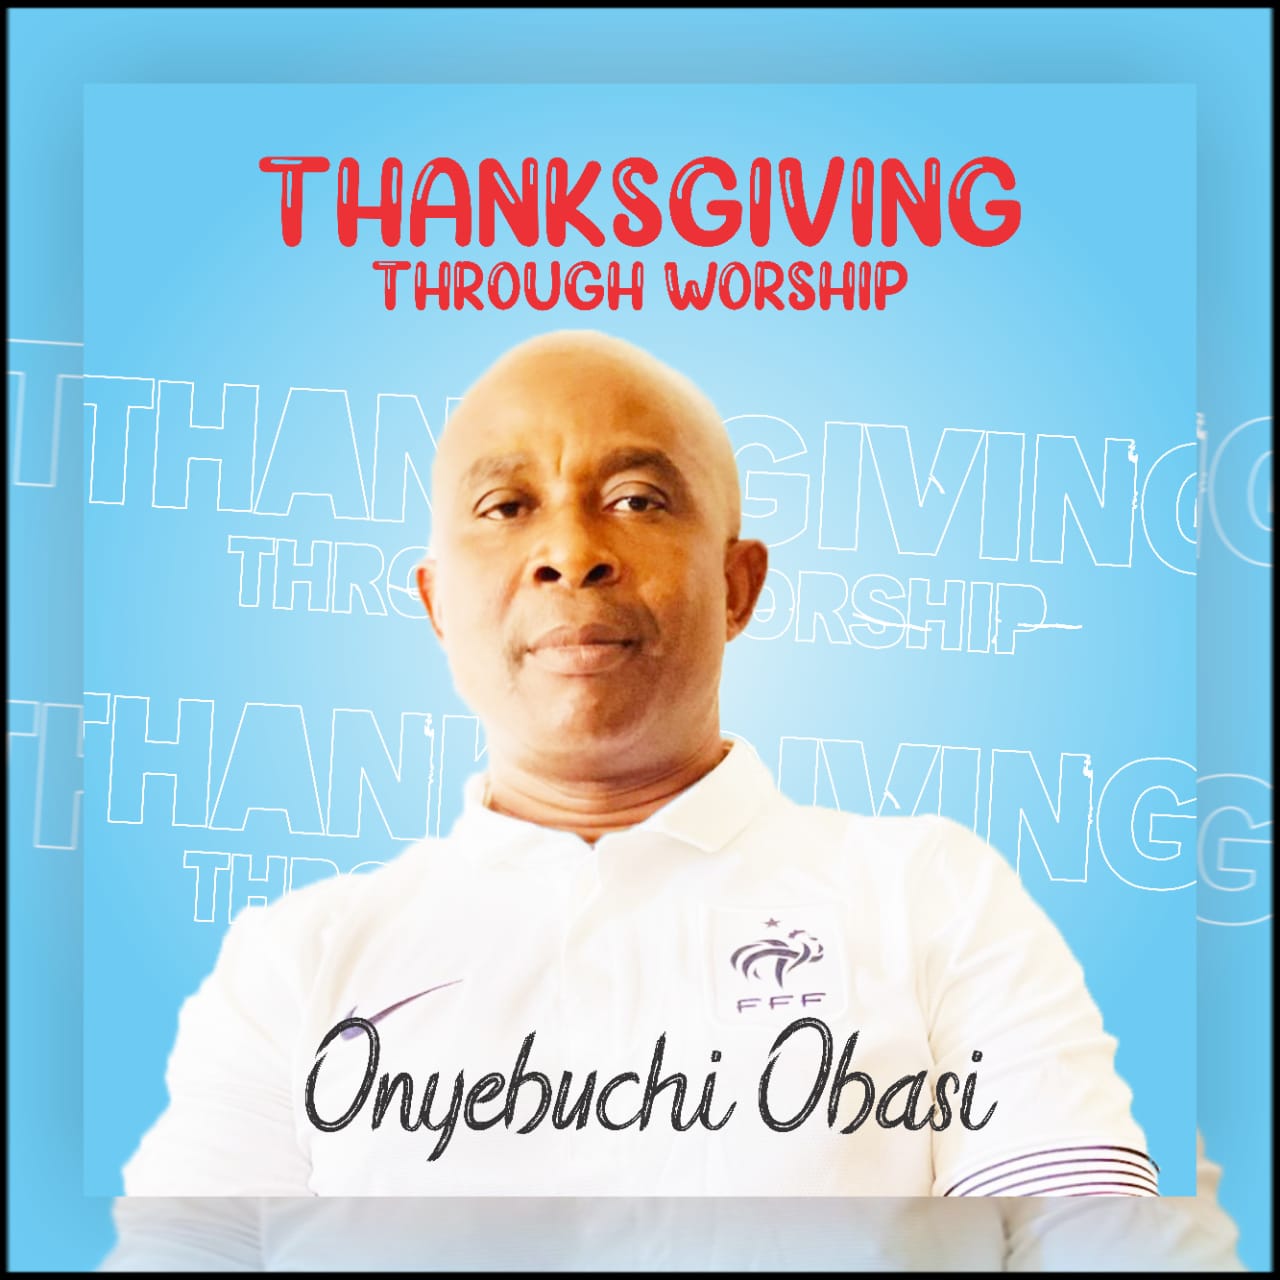 [Gospel Music] Thanksgiving Through Worship - Onyebuchi Obasi - momusicdateThanksgiving Through Worship - Onyebuchi Obasi - momusicdate